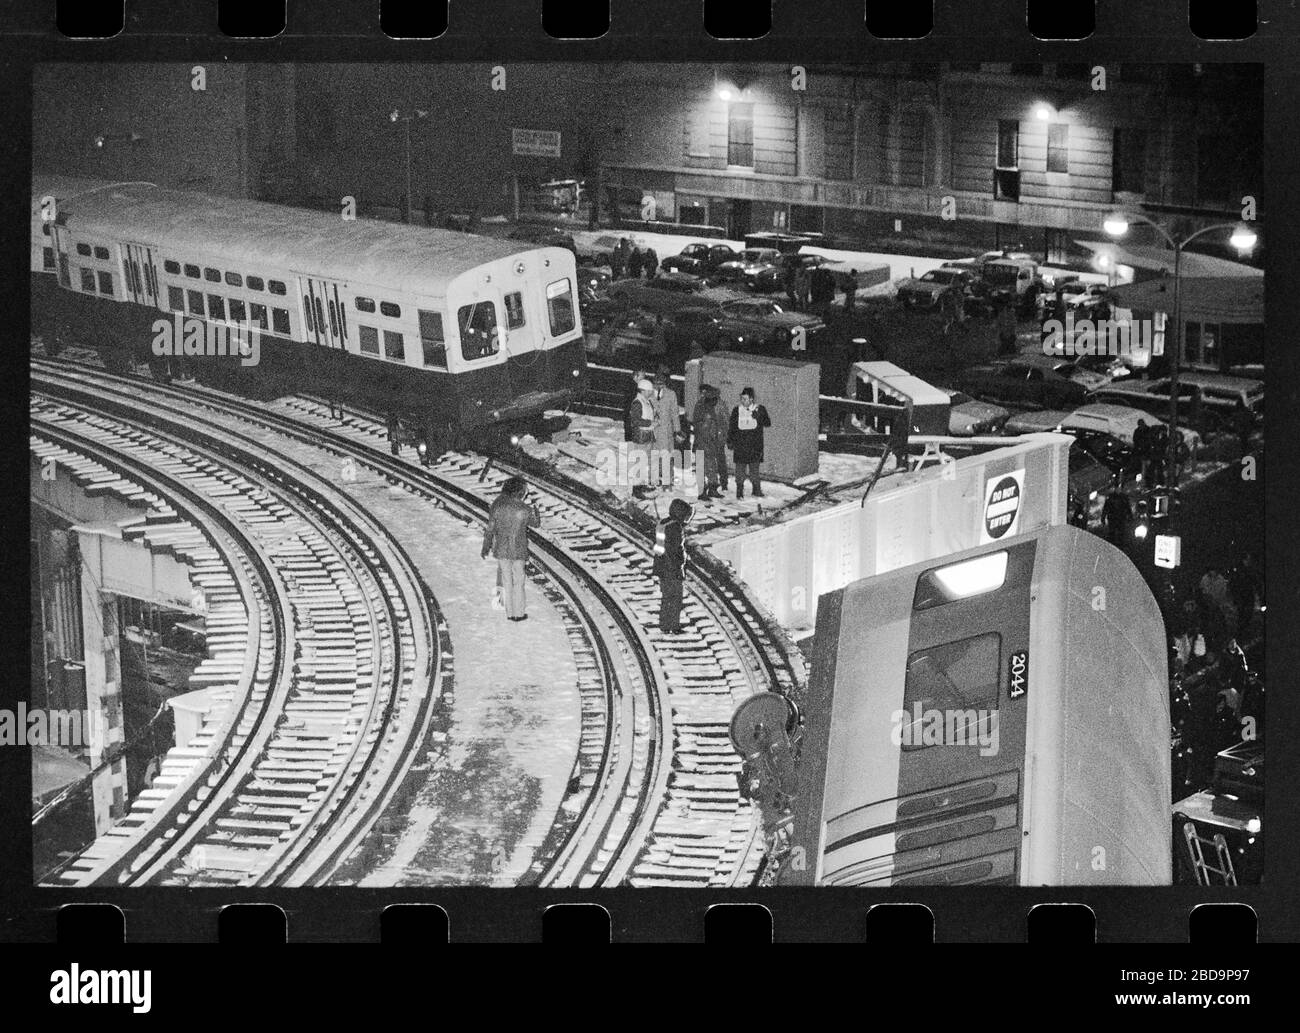 Elevated El train derailment a Chicago, Illinois il Venerdì sera 4 febbraio 1977. Le auto in treno cadono al livello della strada del Chicago Loop a causa di una collisione all'incrocio tra Lake Street e Wabash Avenue. Immagine da 35 mm negativo. Foto Stock